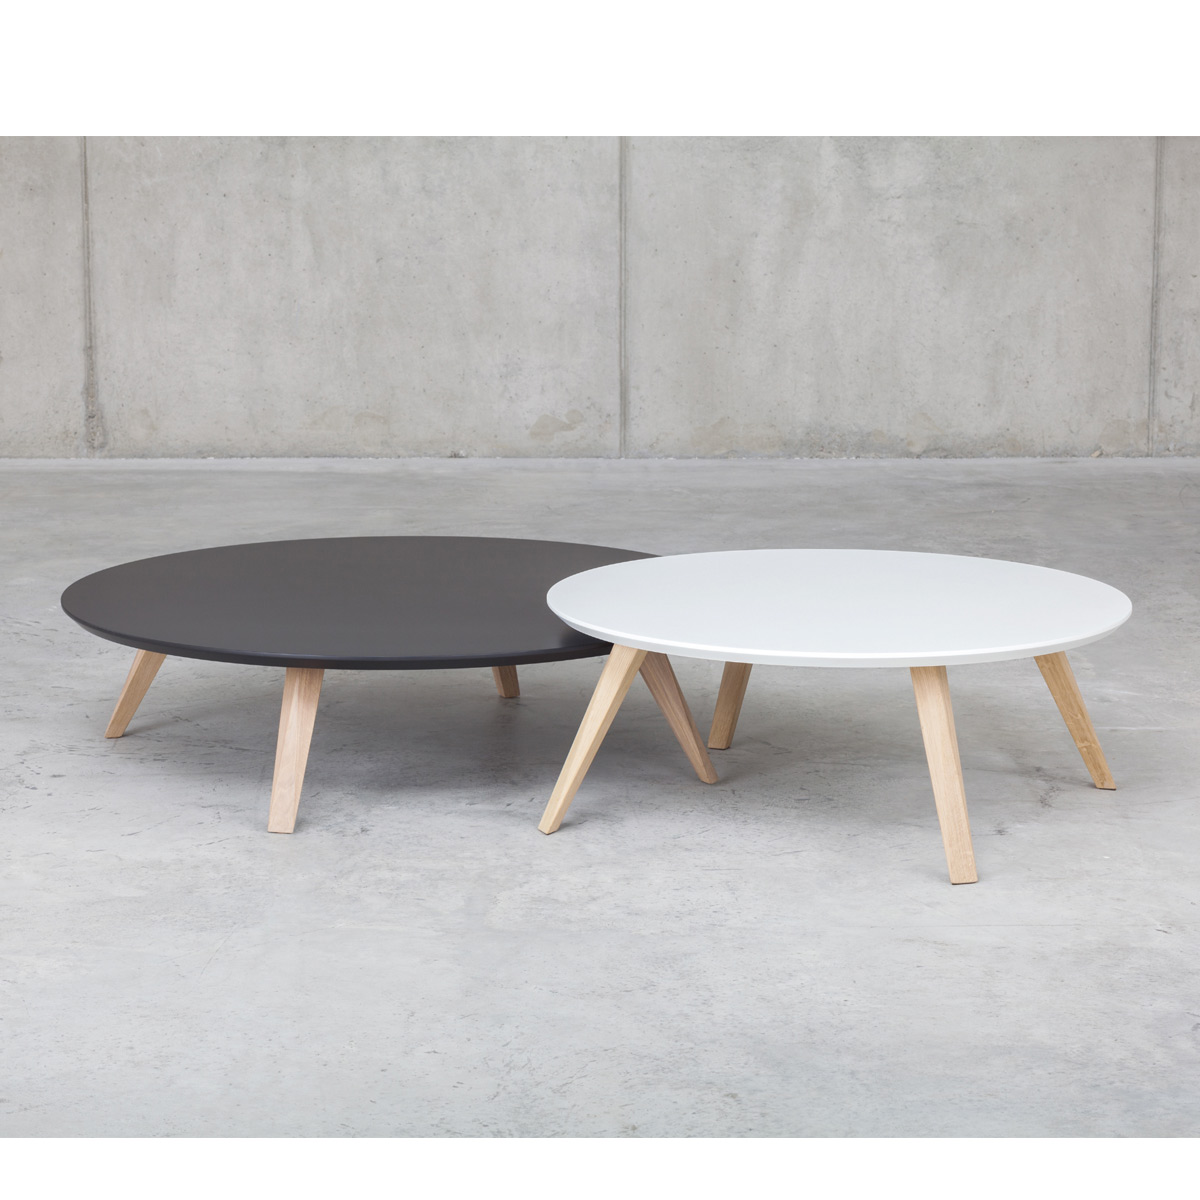 Table basse bois design scandinave